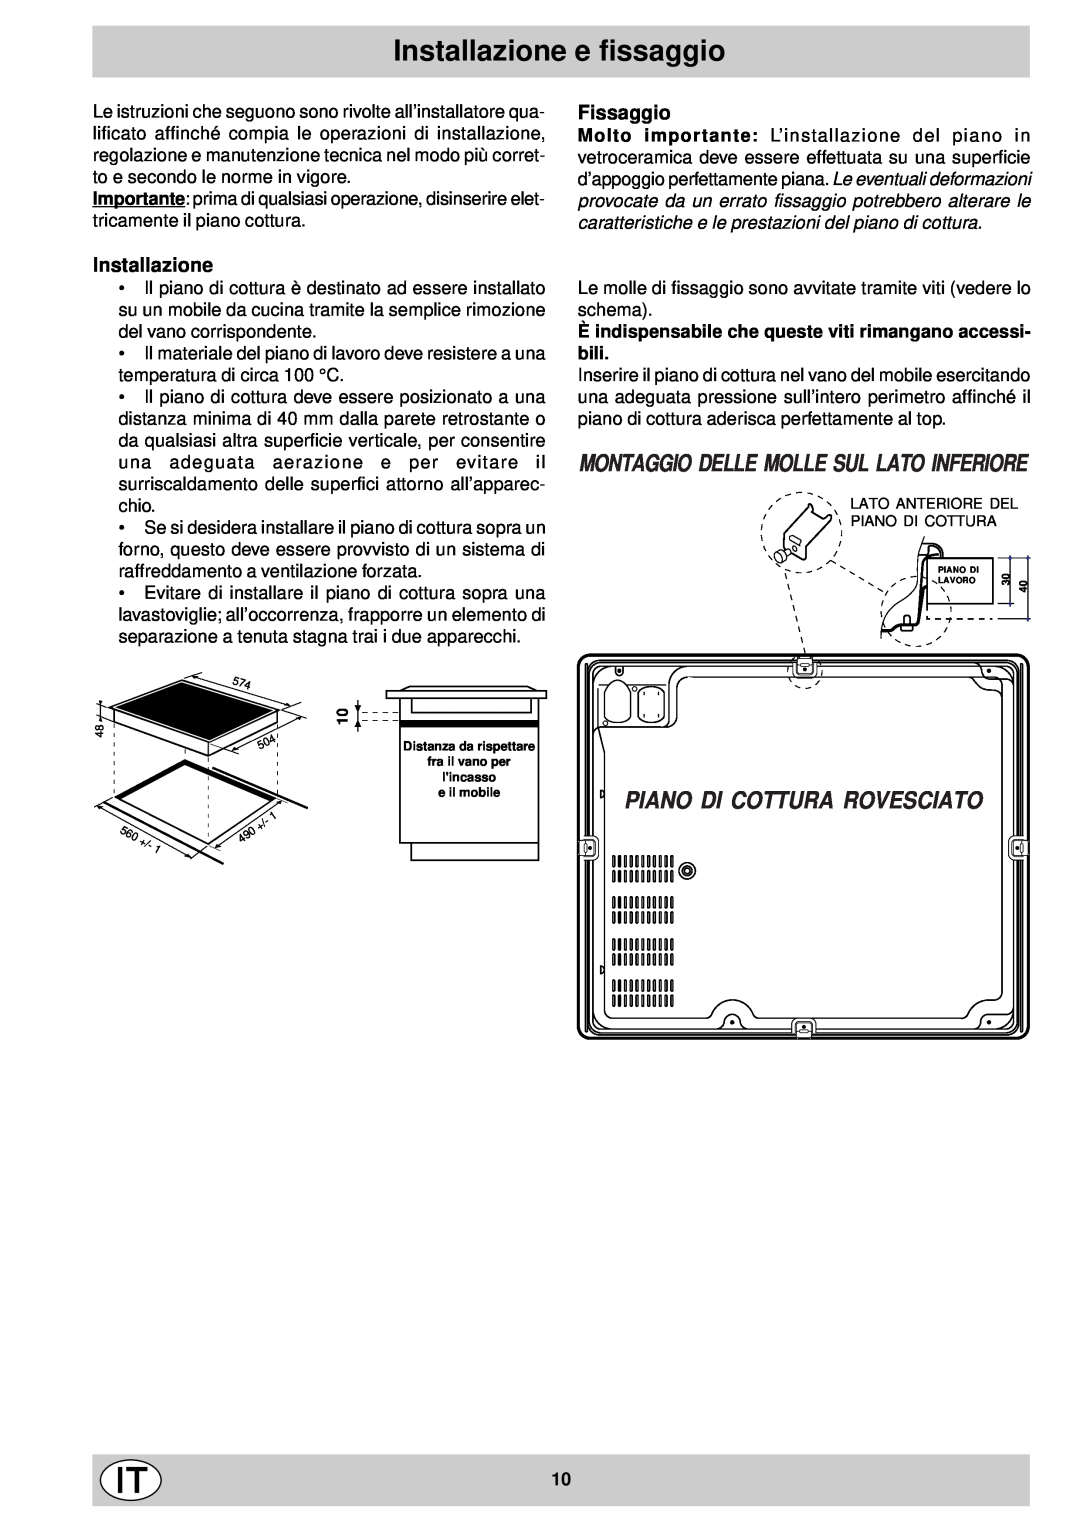 Indesit mk 64 r manual Installazione e fissaggio, Piano Di Cottura Rovesciato, Fissaggio 